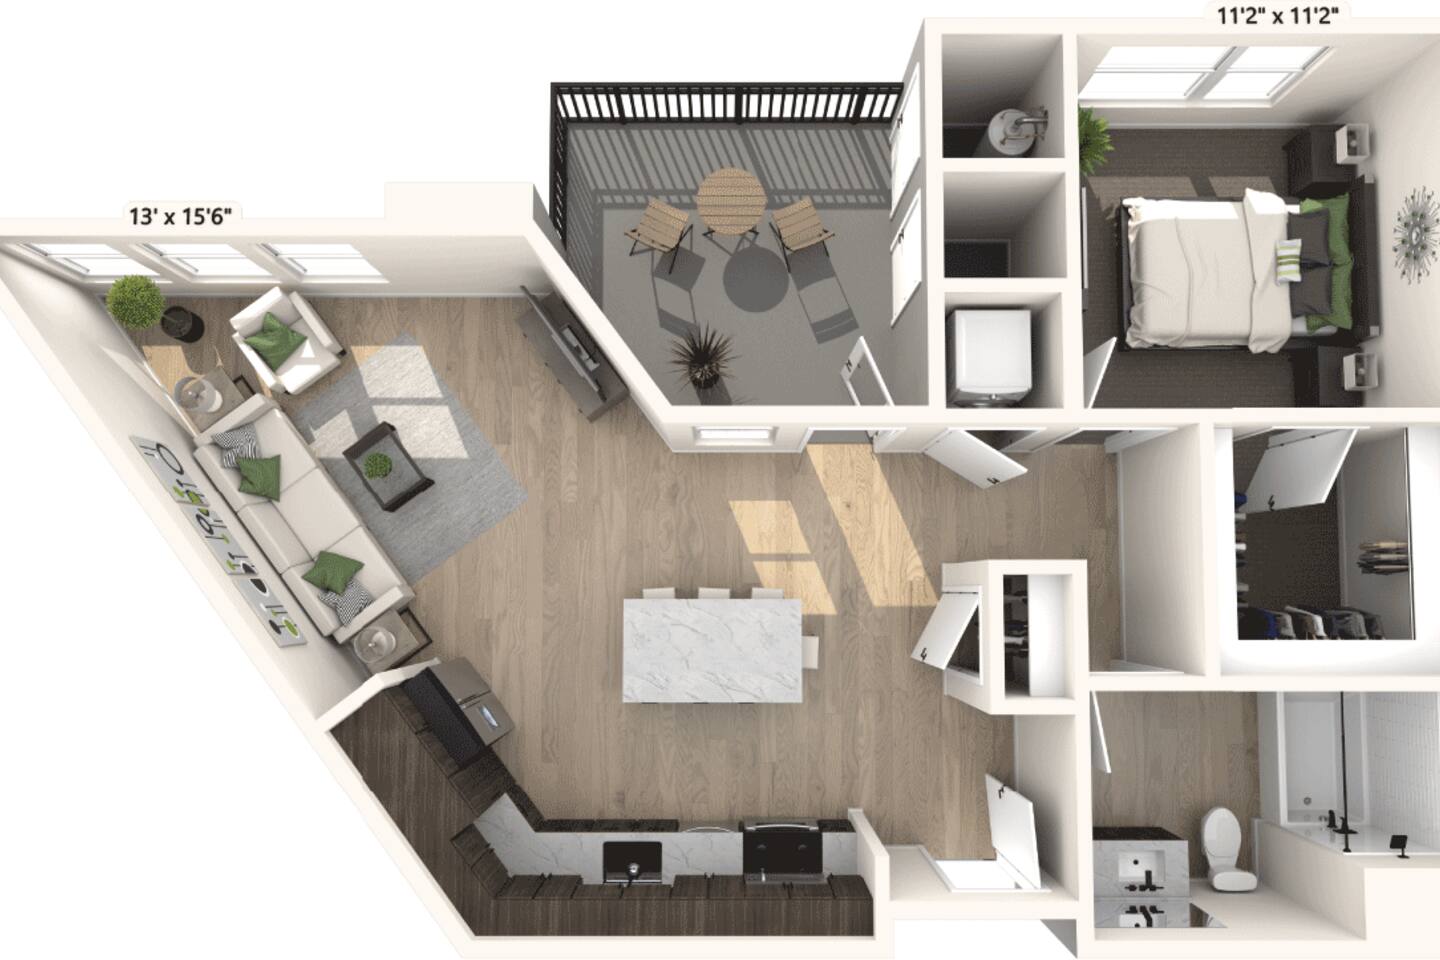 Floorplan diagram for Coronado, showing 1 bedroom